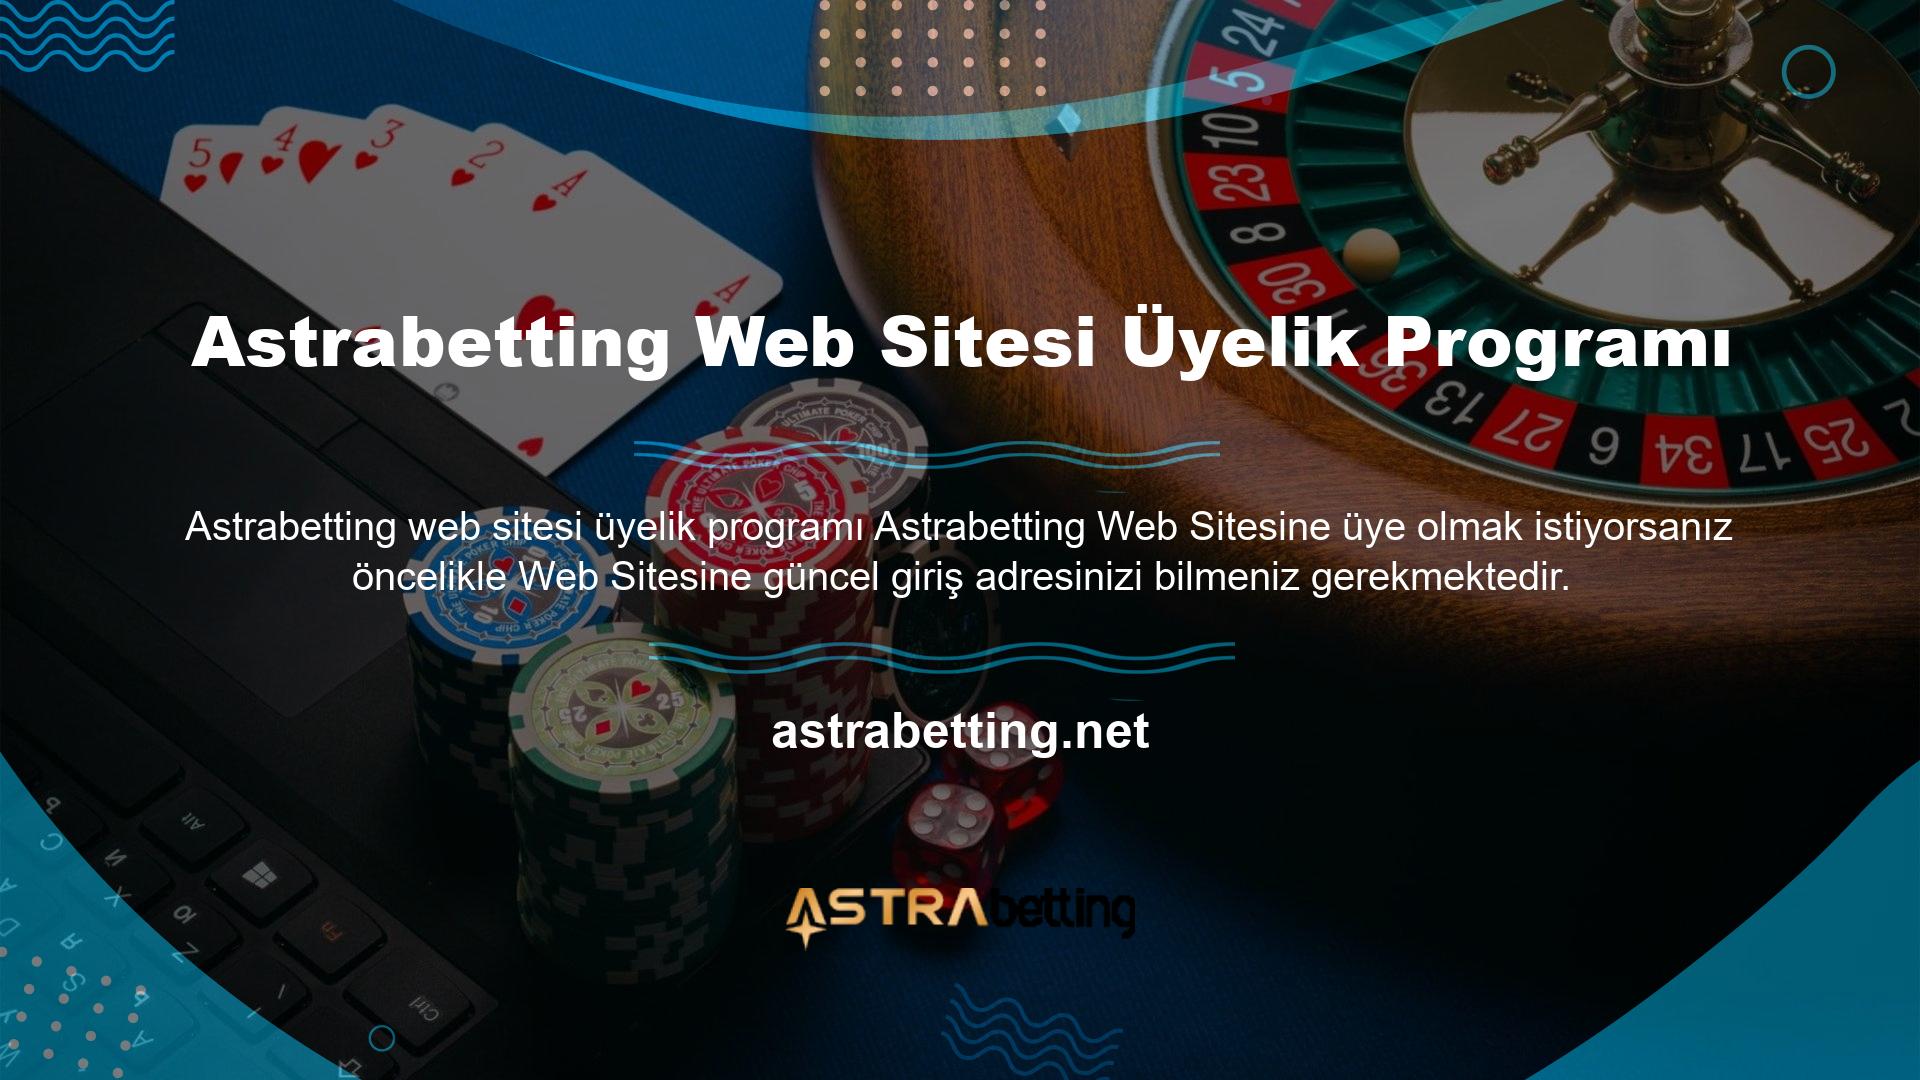 Astrabetting web sitesinde üyelik kayıt işlemi oldukça kolaydır